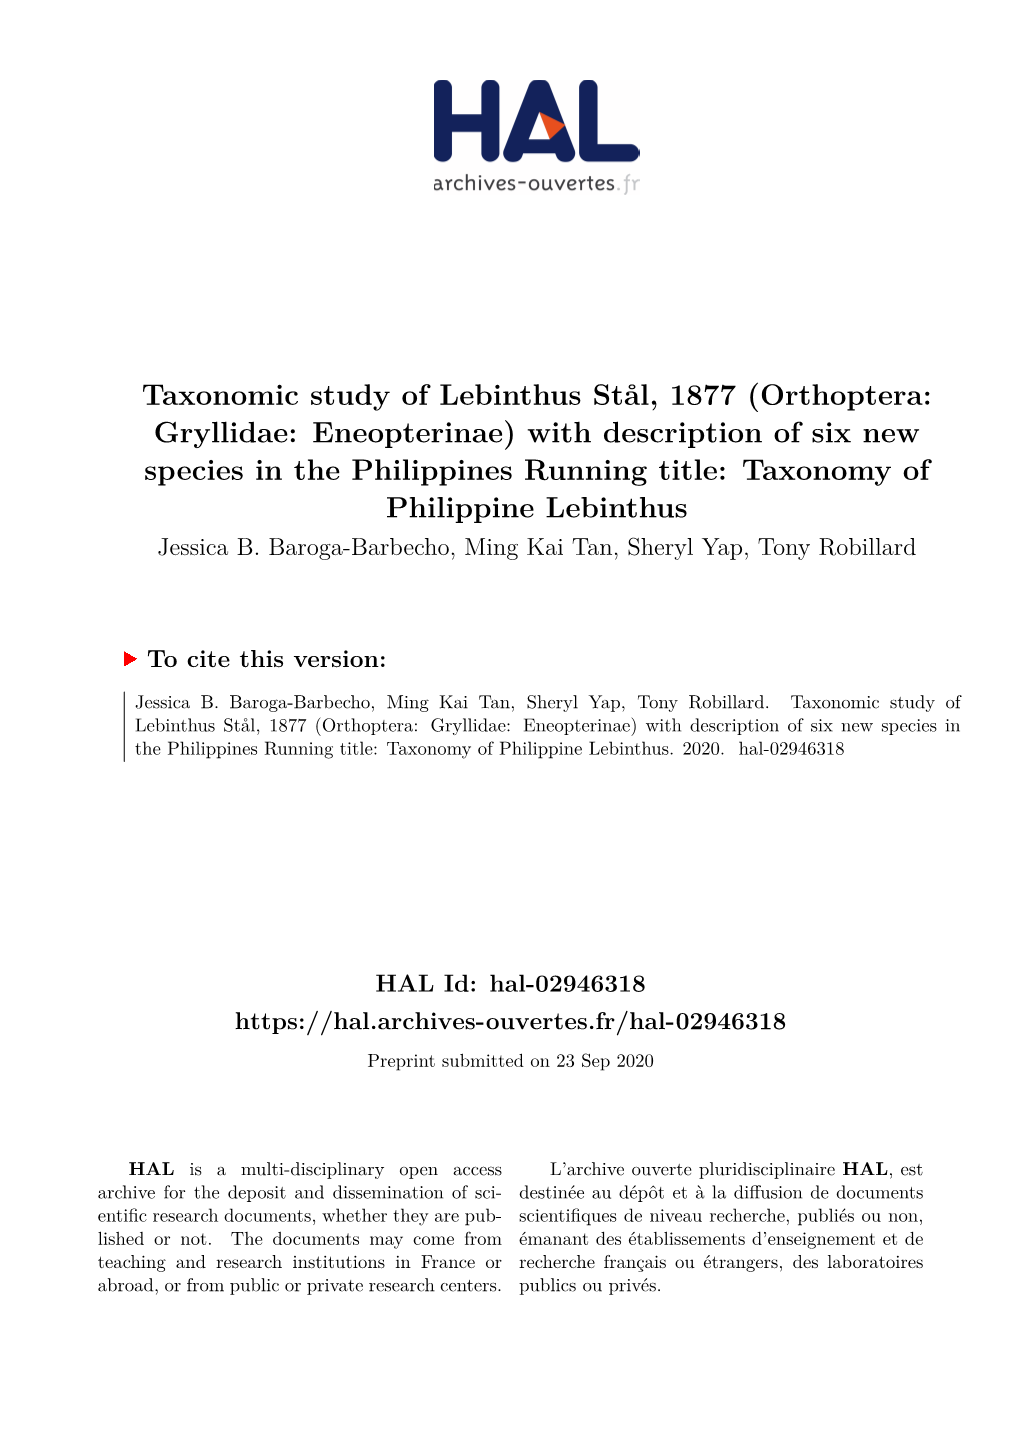 Taxonomic Study of Lebinthus Stål, 1877